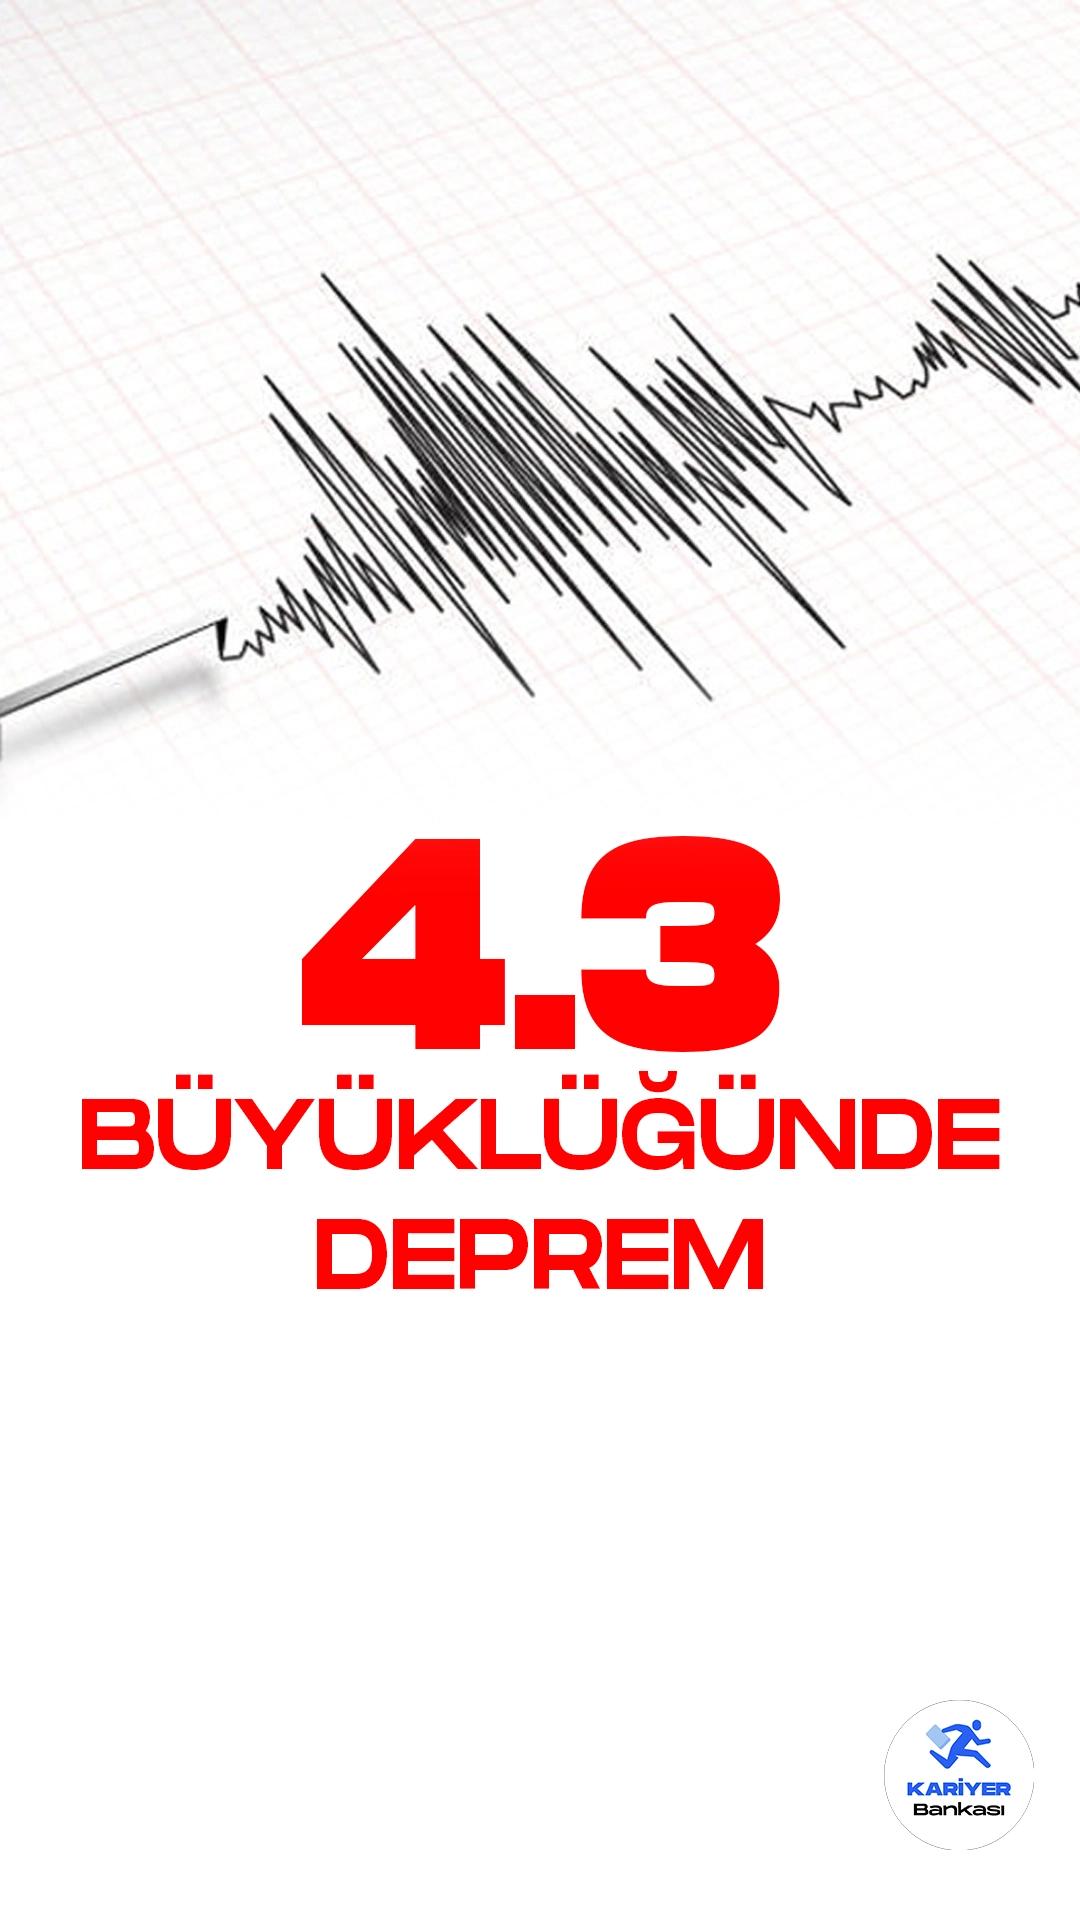 Malatya'da 4.3 Büyüklüğünde Deprem Oldu. İçişleri Bakanlığı Afet ve Acil Durum Yönetimi Başkanlığı resmi sayfasından yayımlanan son dakika bilgisine göre, Malatya'nın Pütürge ilçesinde 4.3 büyüklüğünde deprem meydana geldiği kaydedildi.